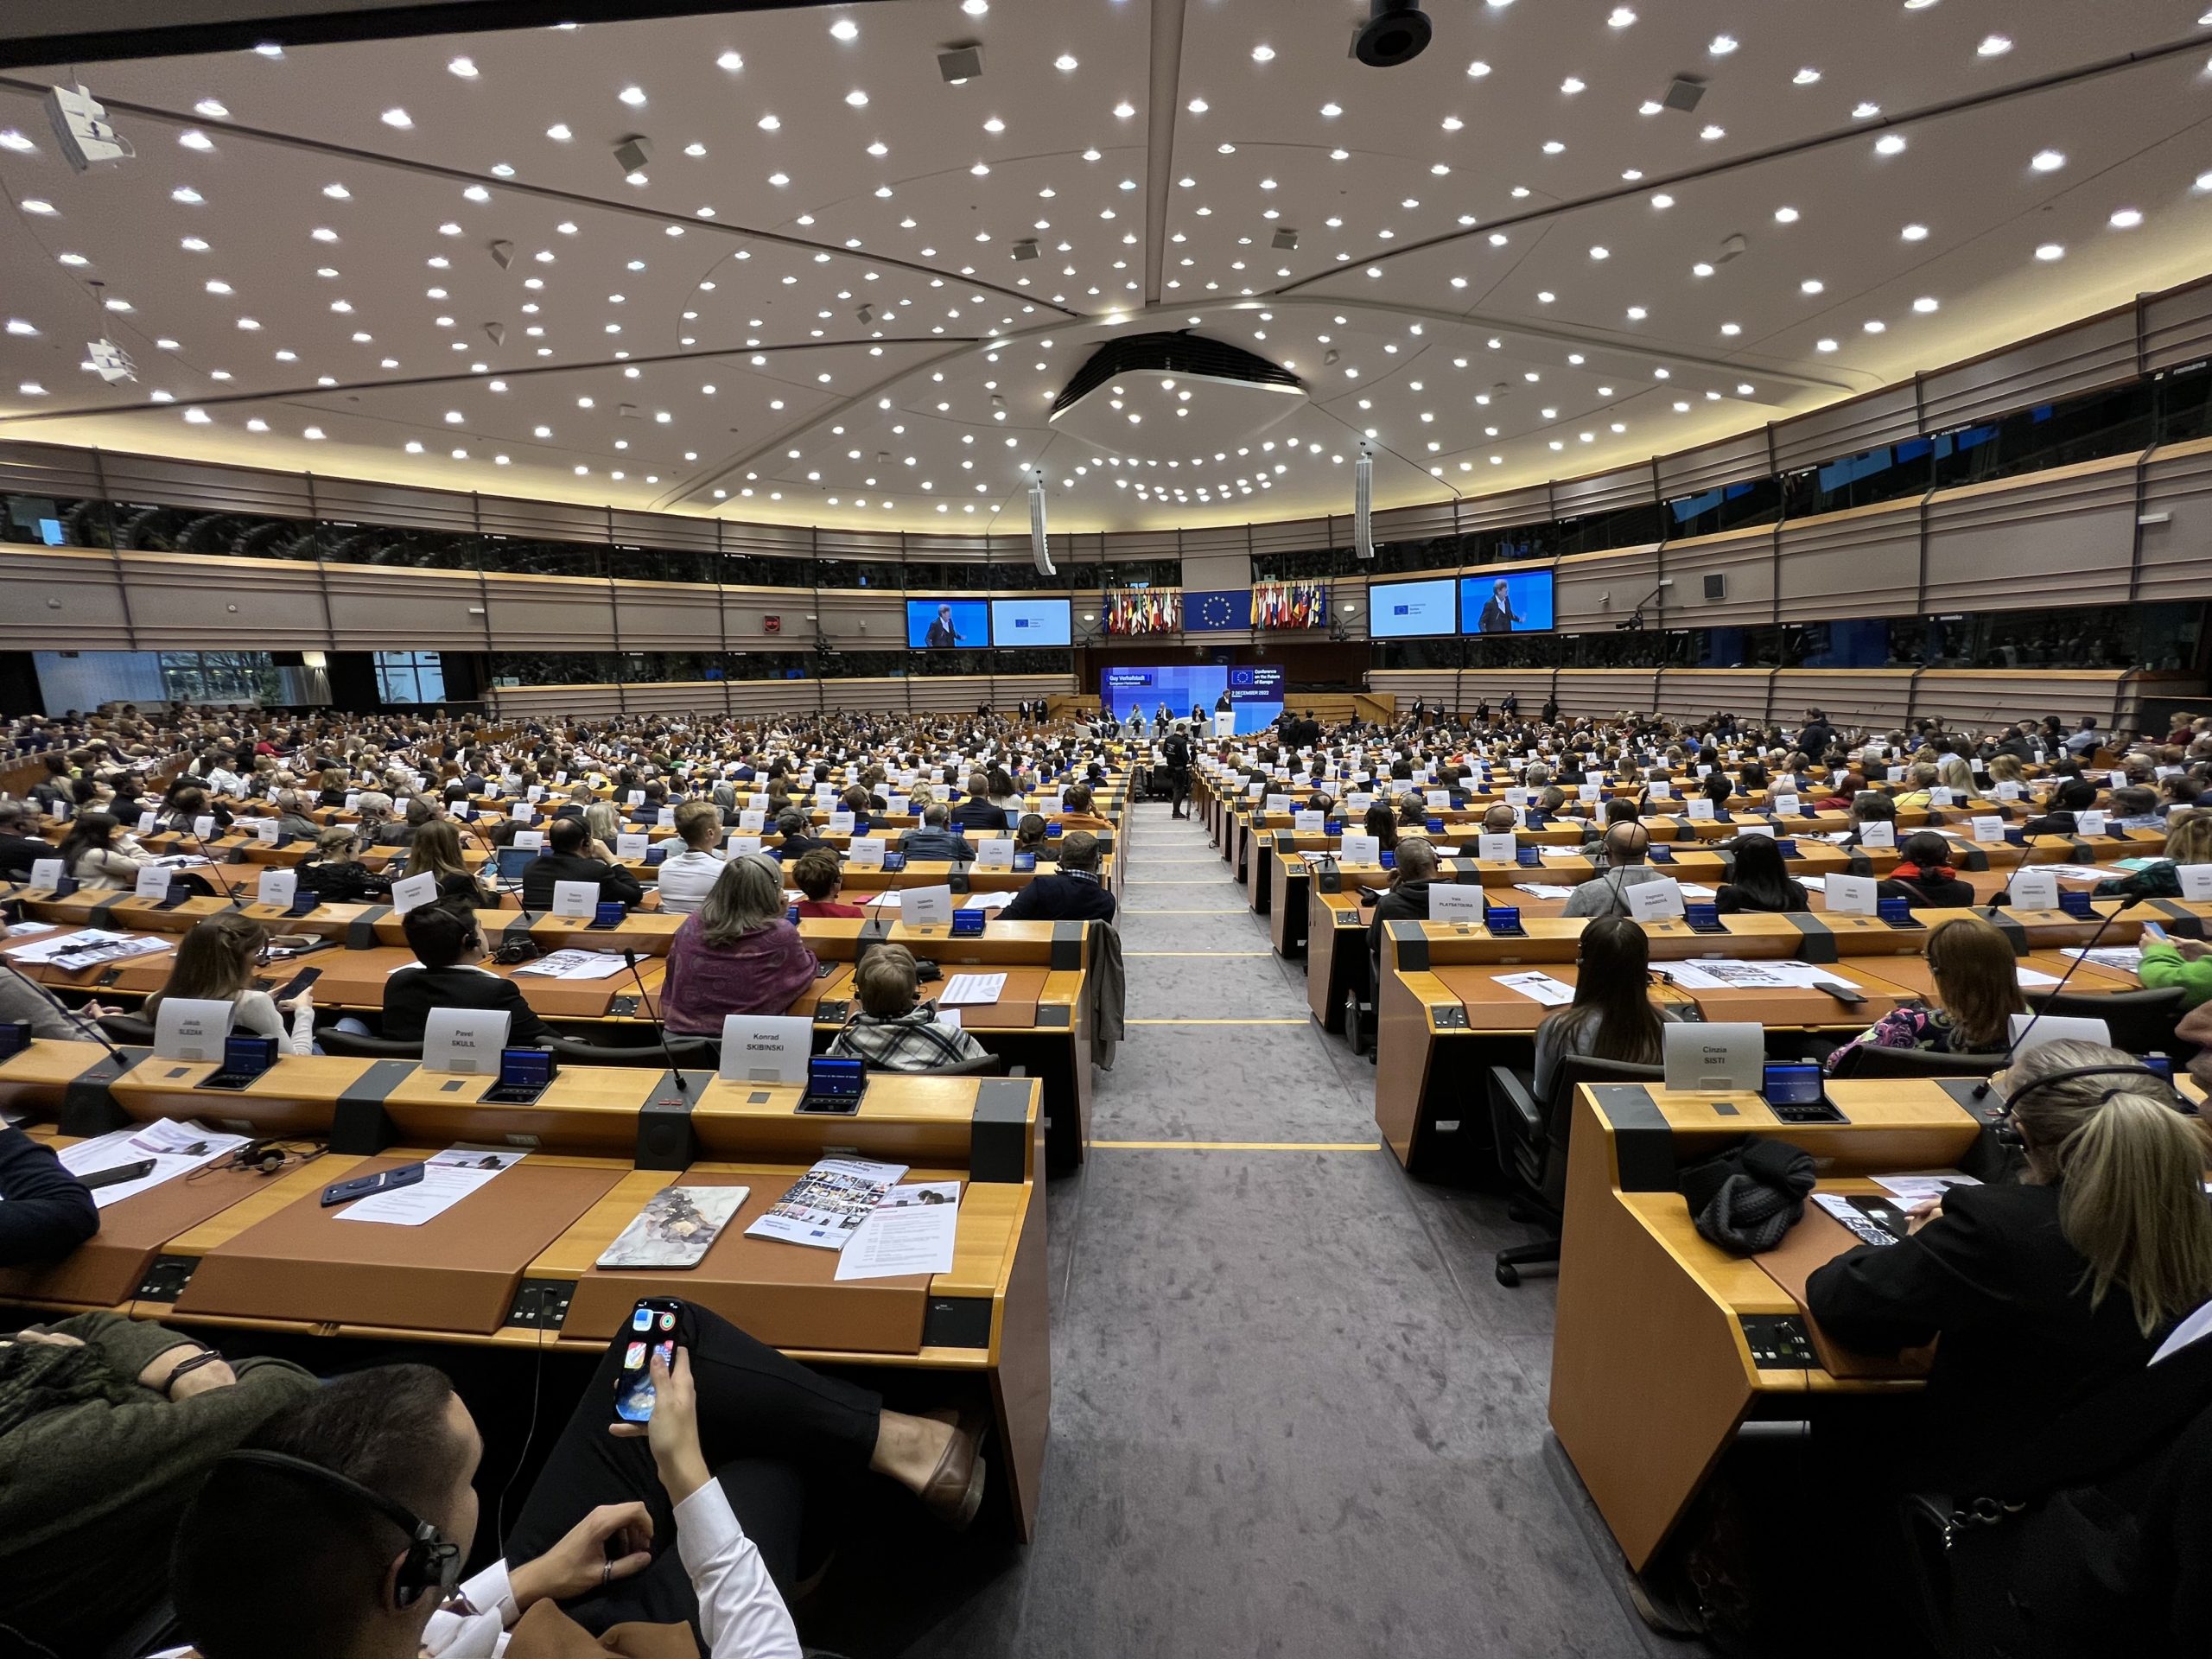 Βρυξέλλες – Διάσκεψη για το μέλλον της Ευρώπης: Οι προτάσεις των πολιτών για μέτρα «στα χέρια» των θεσμικών οργάνων